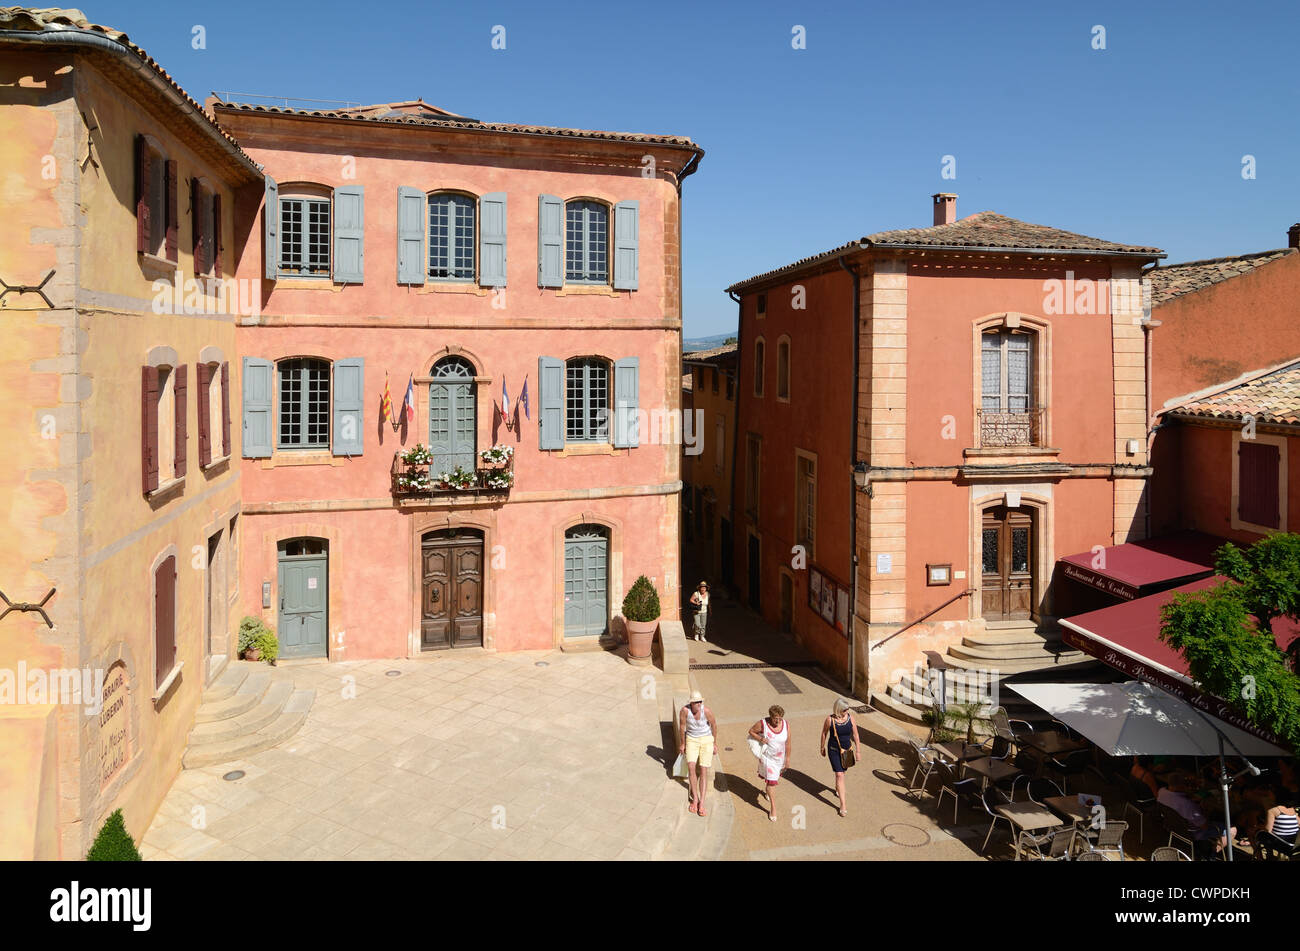 Touristen gehen über den Hauptplatz des Dorfes mit ocherfarbenen Gebäuden und dem Rathaus oder Mairie Roussillon Luberon Provence France Stockfoto